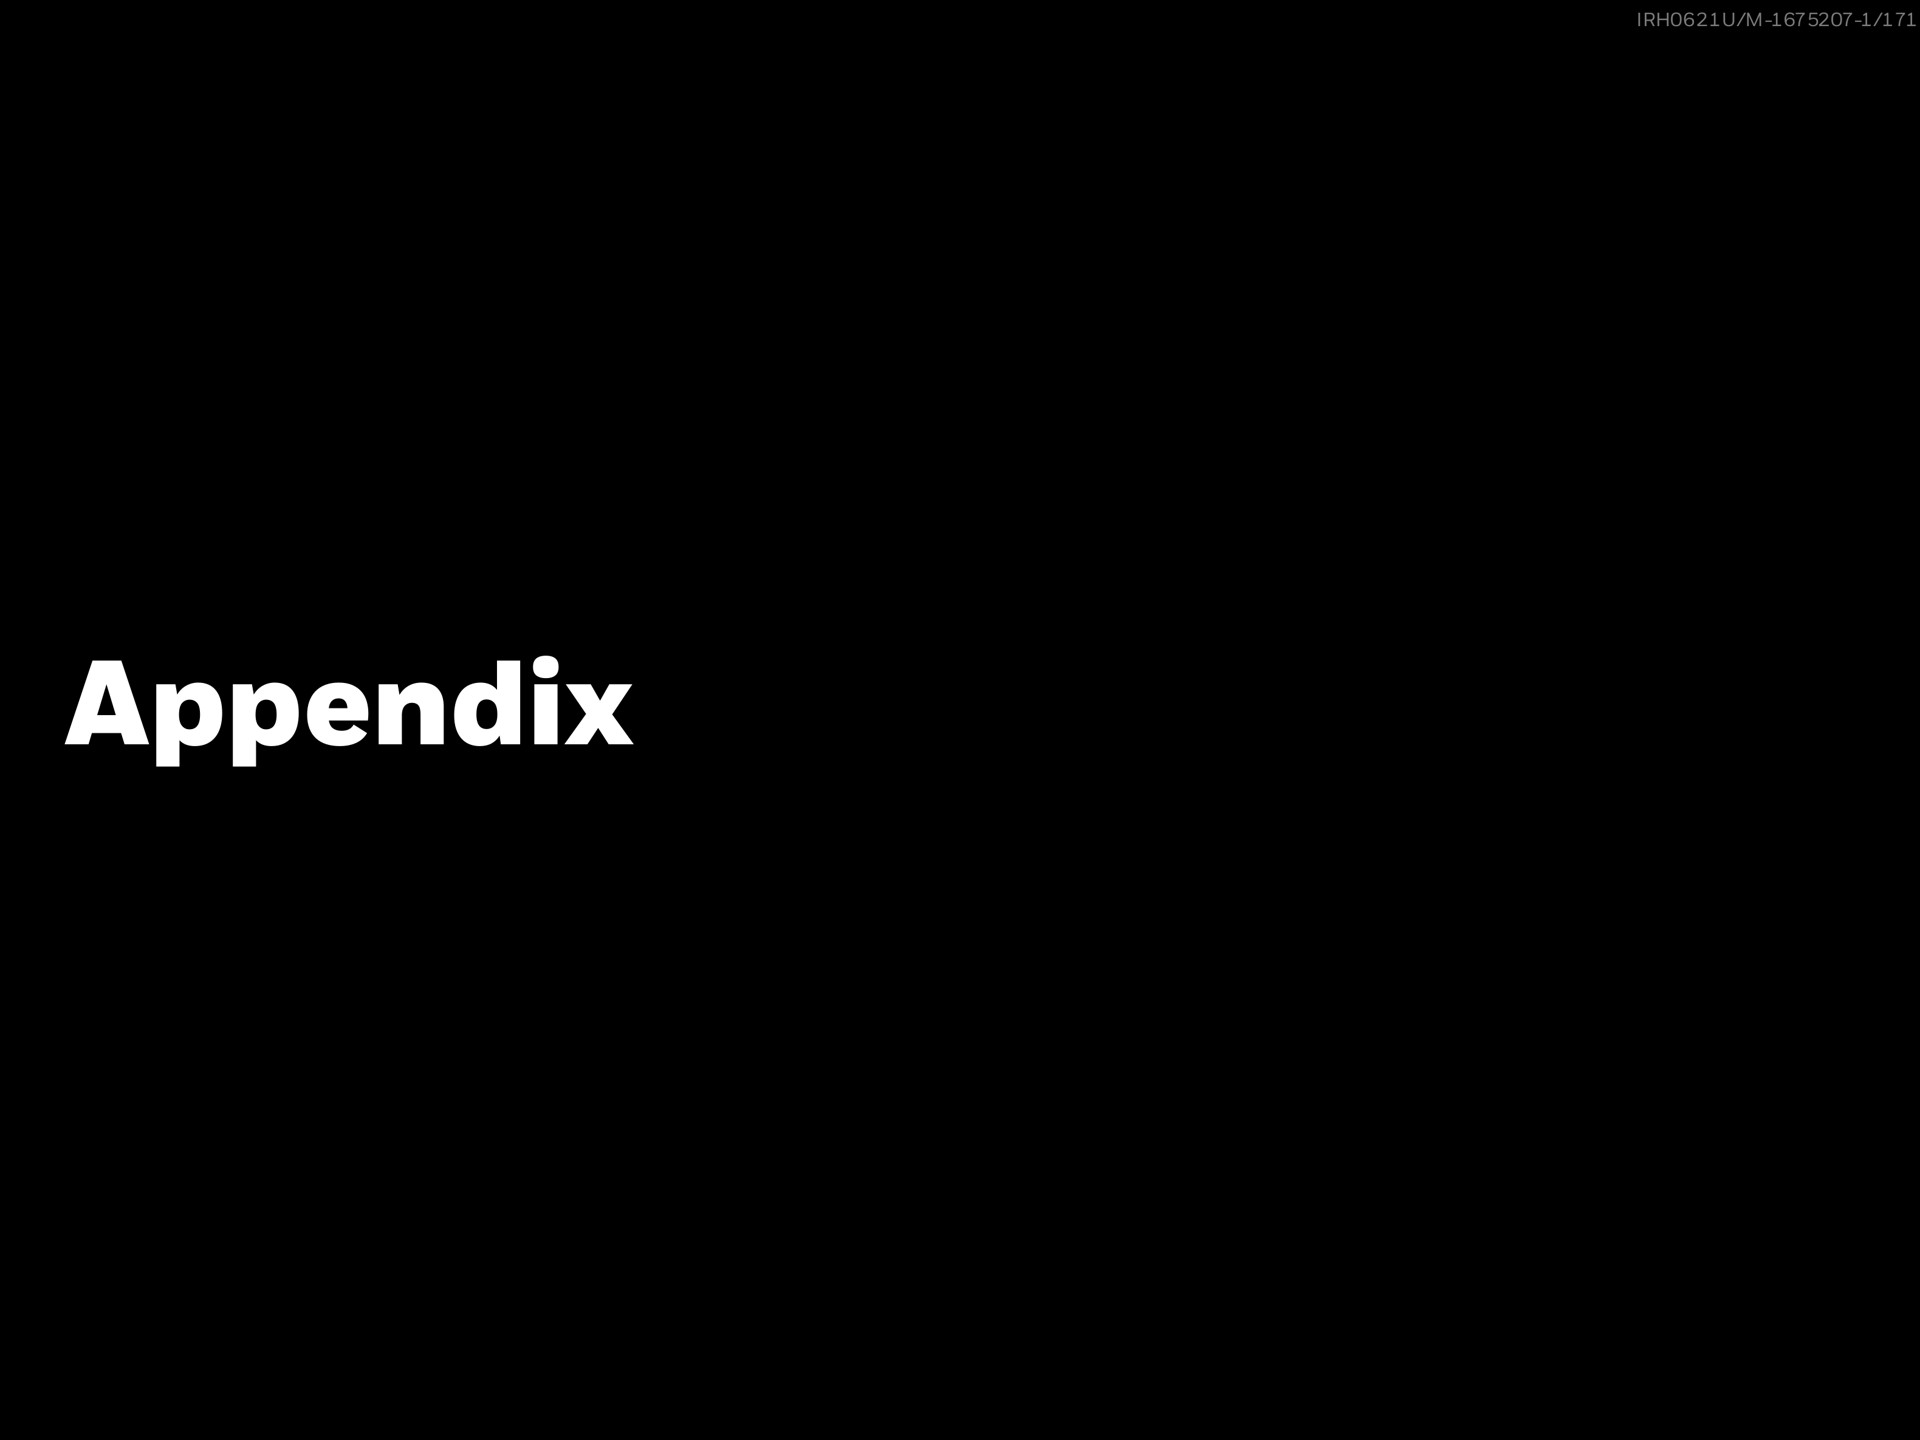 appendix | BlackRock